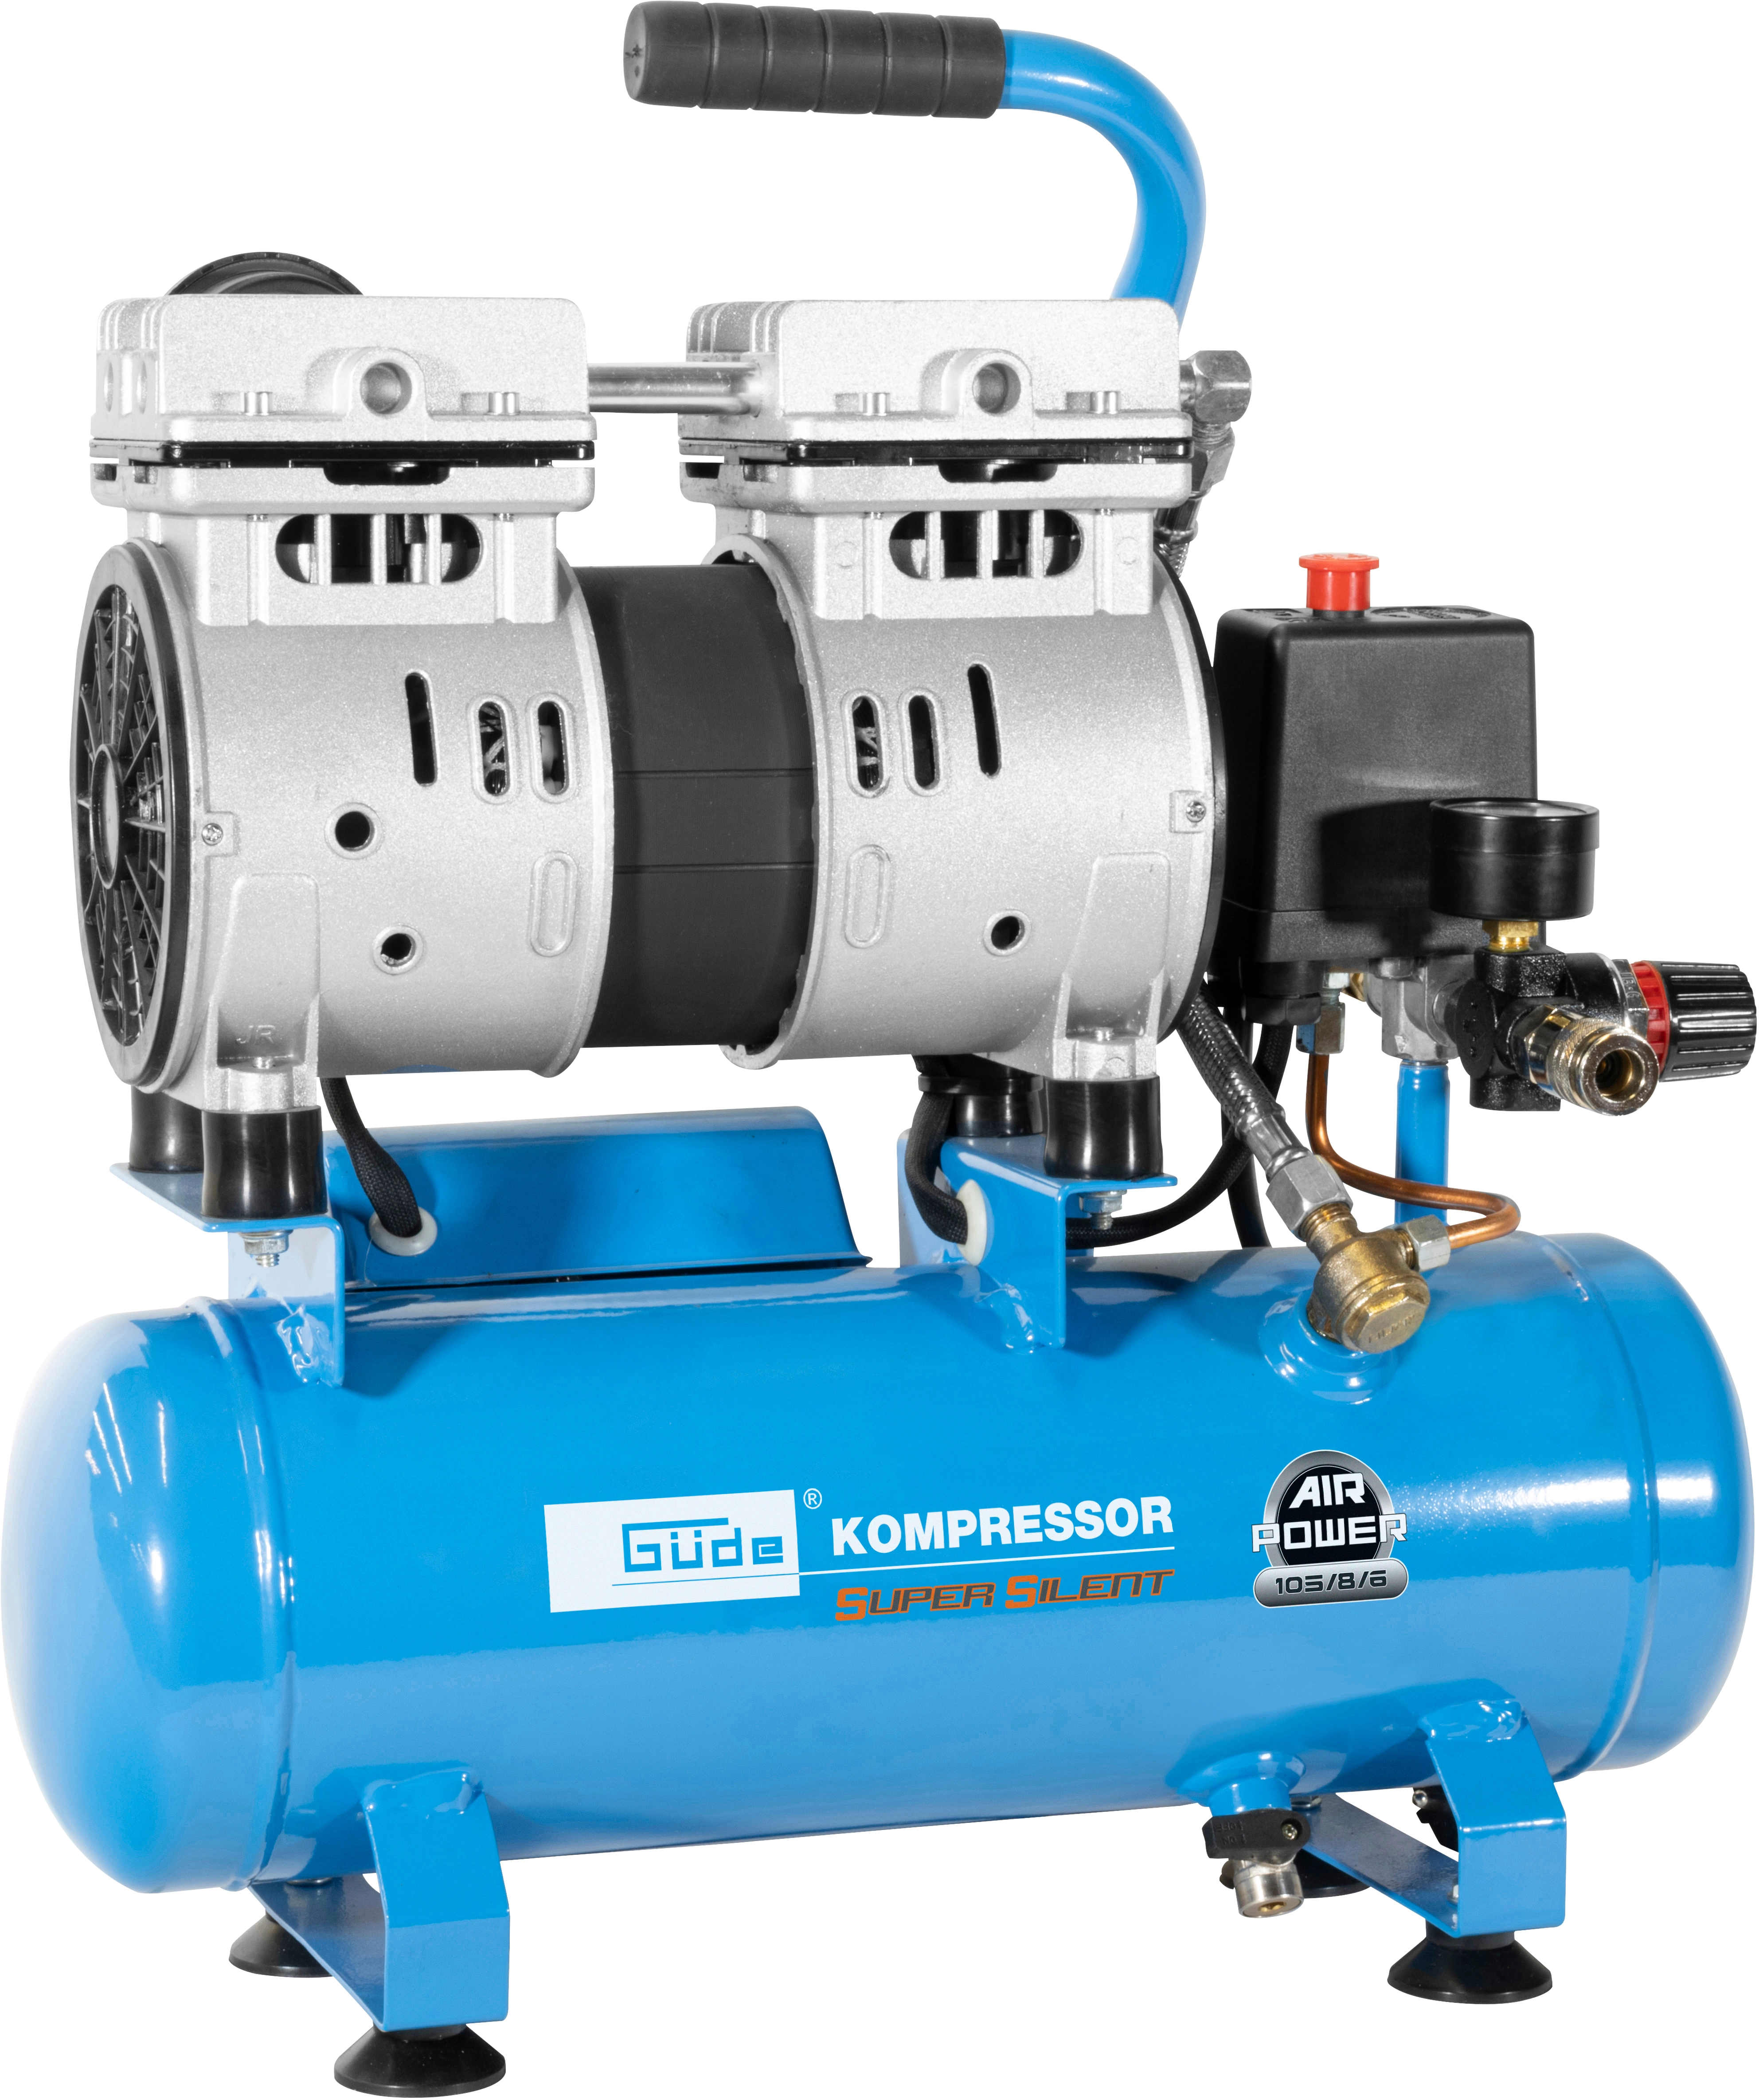 Kompressor ölfrei - 9 L - 550 W Druckluft-Kompressor Luftkompressor